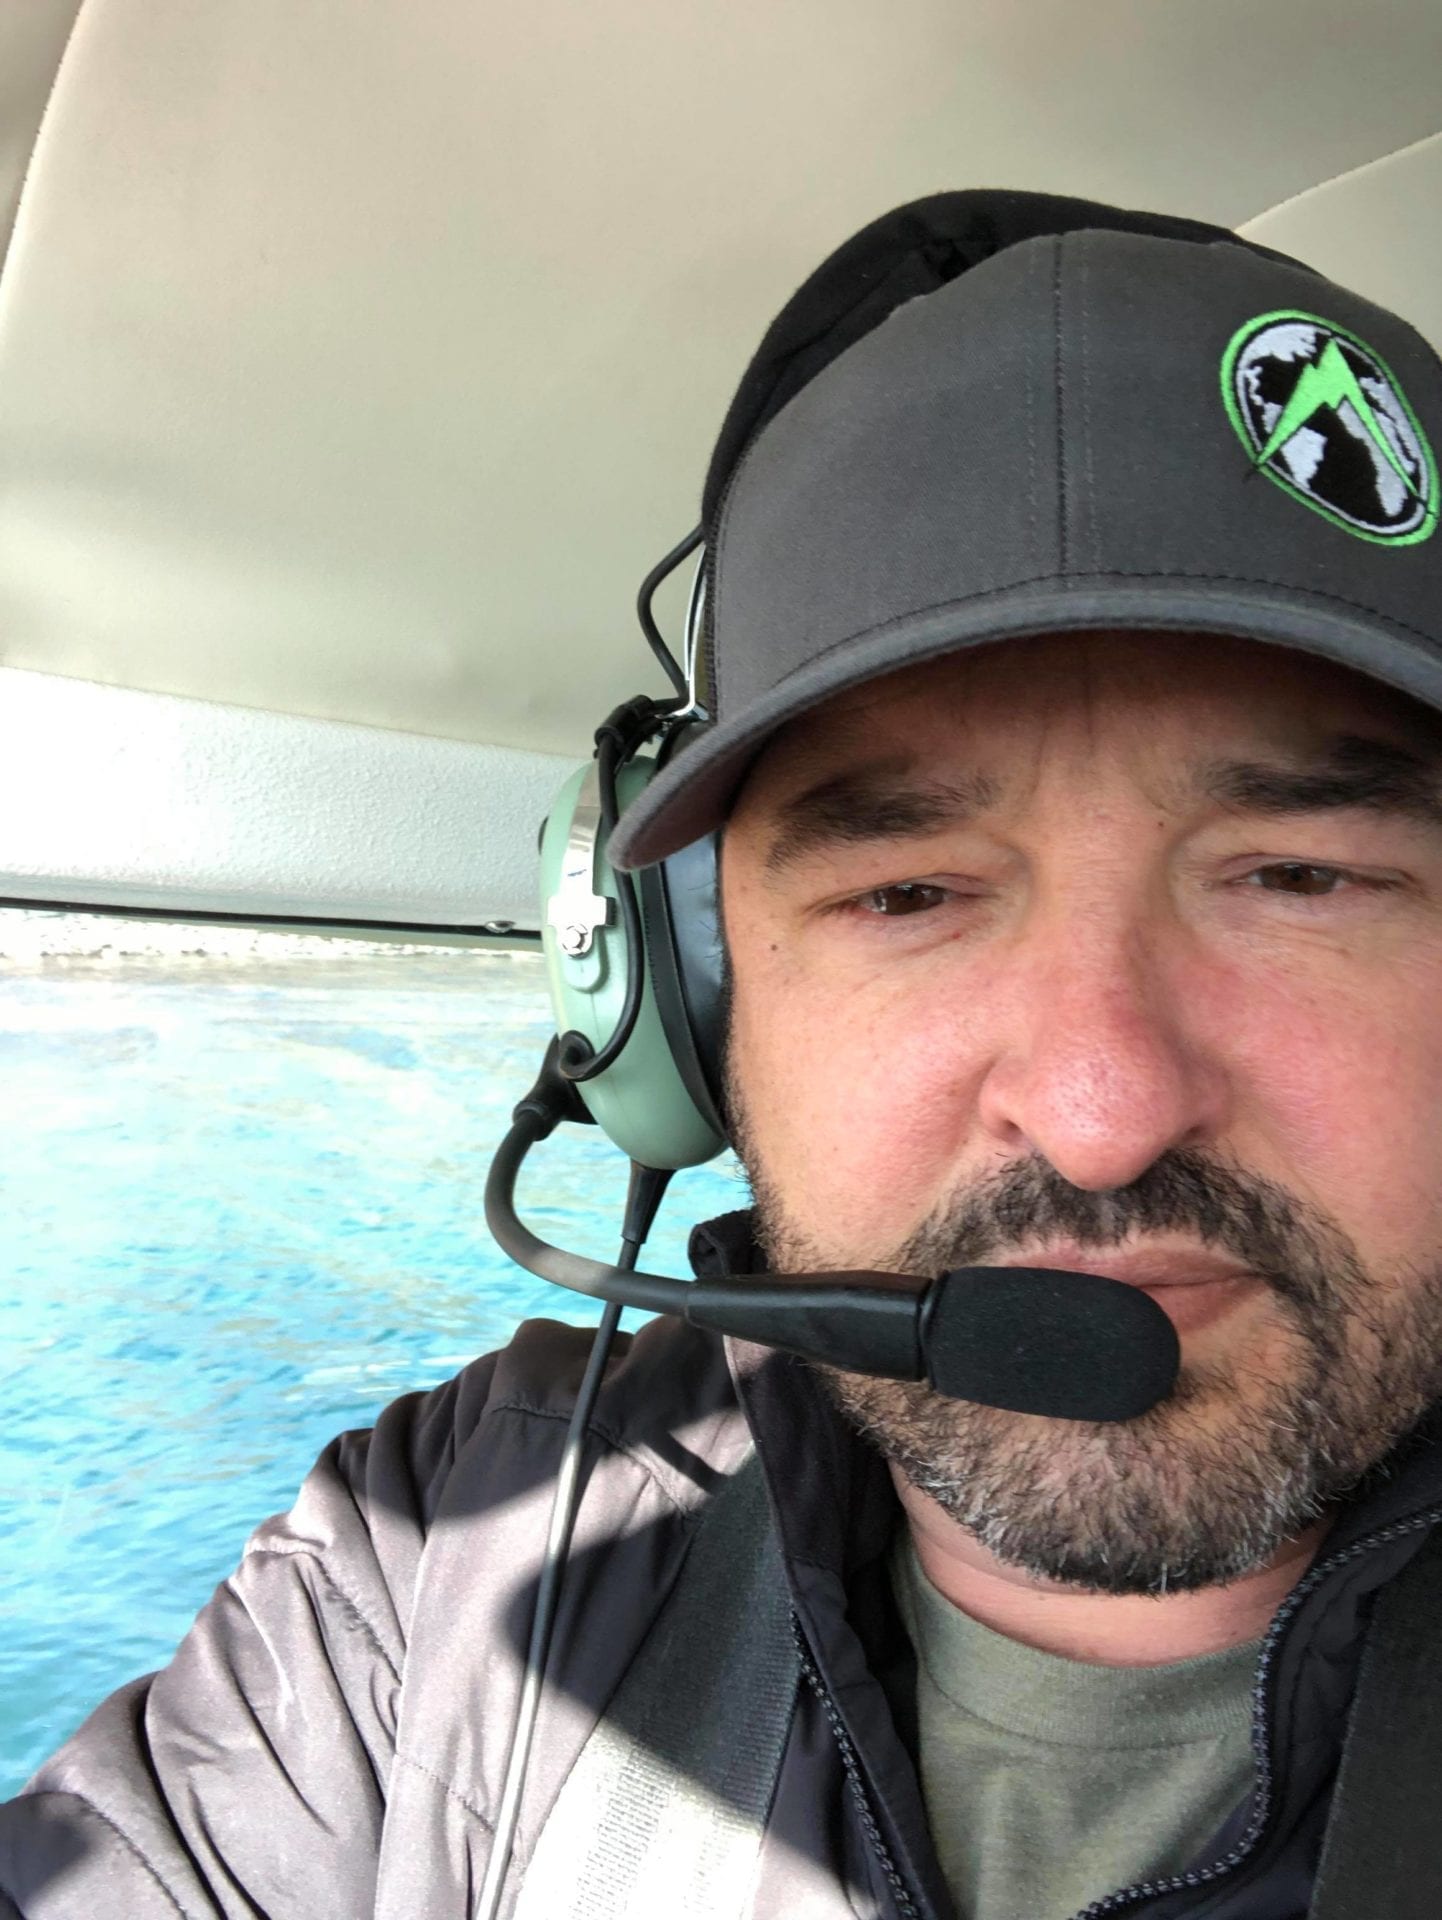 Cory Glauner landing in Kodiak